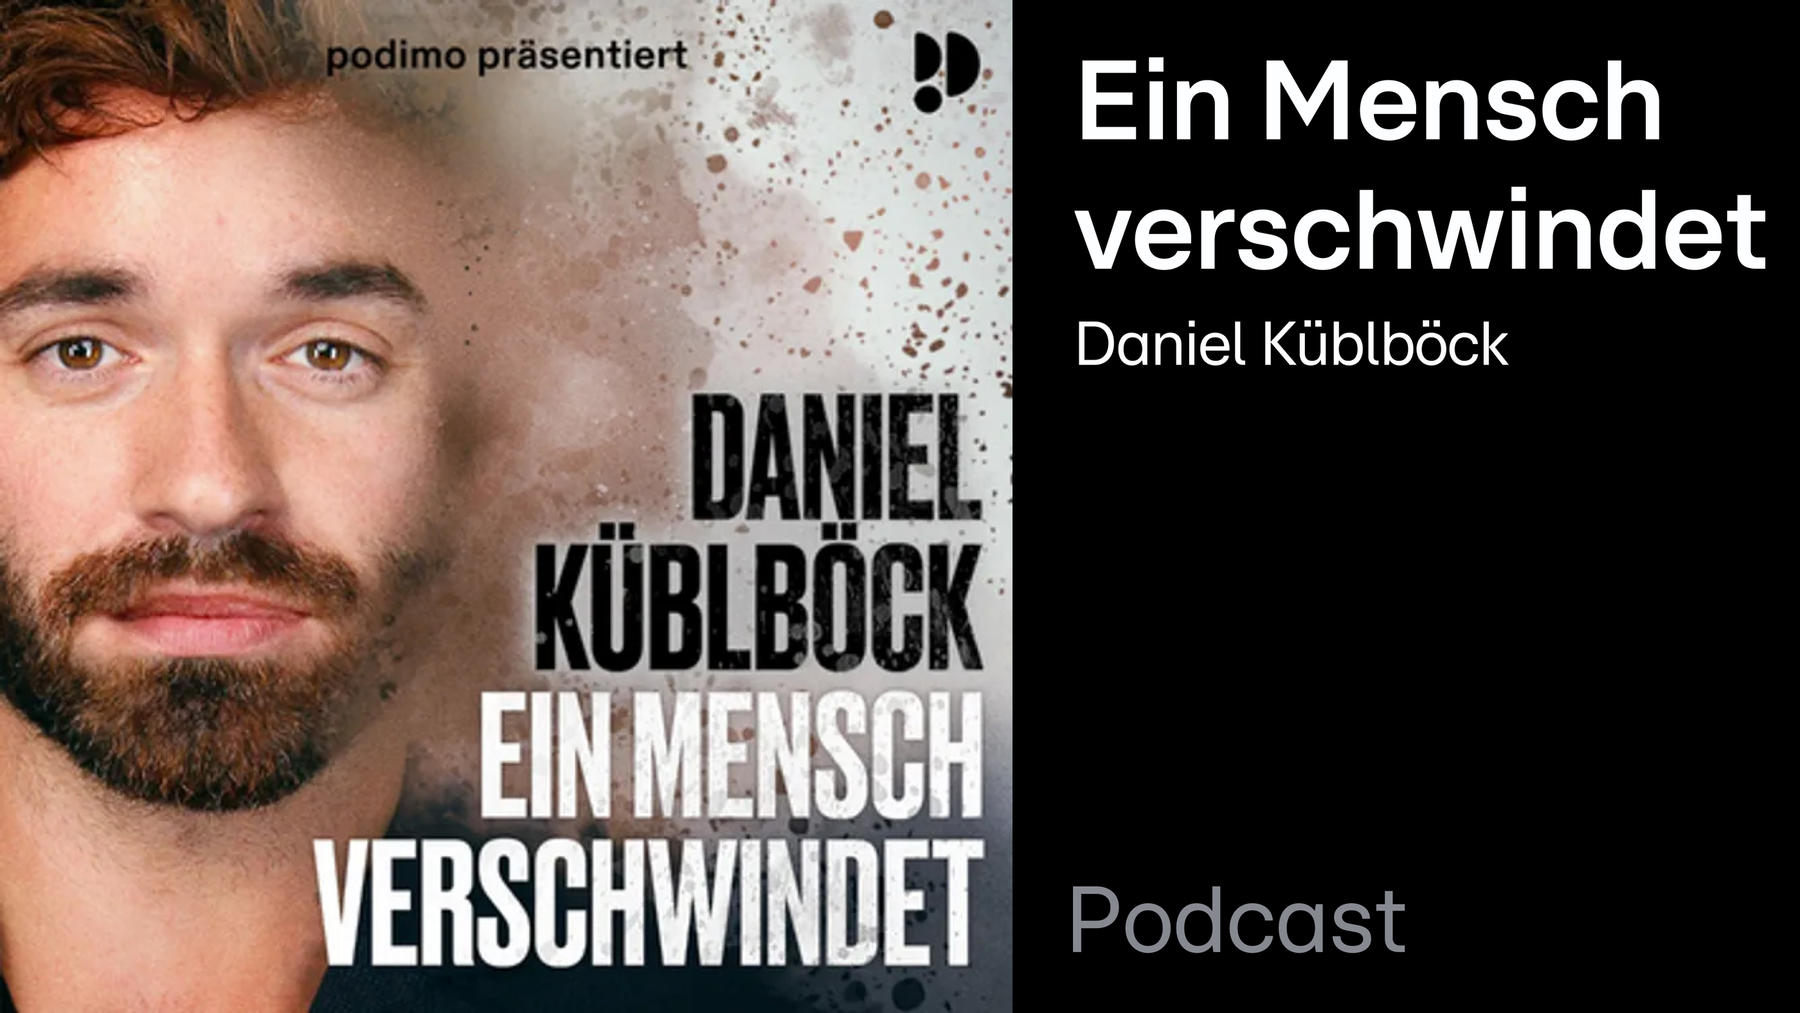 Podcast: Ein Mensch verschwindet – Daniel Küblböck